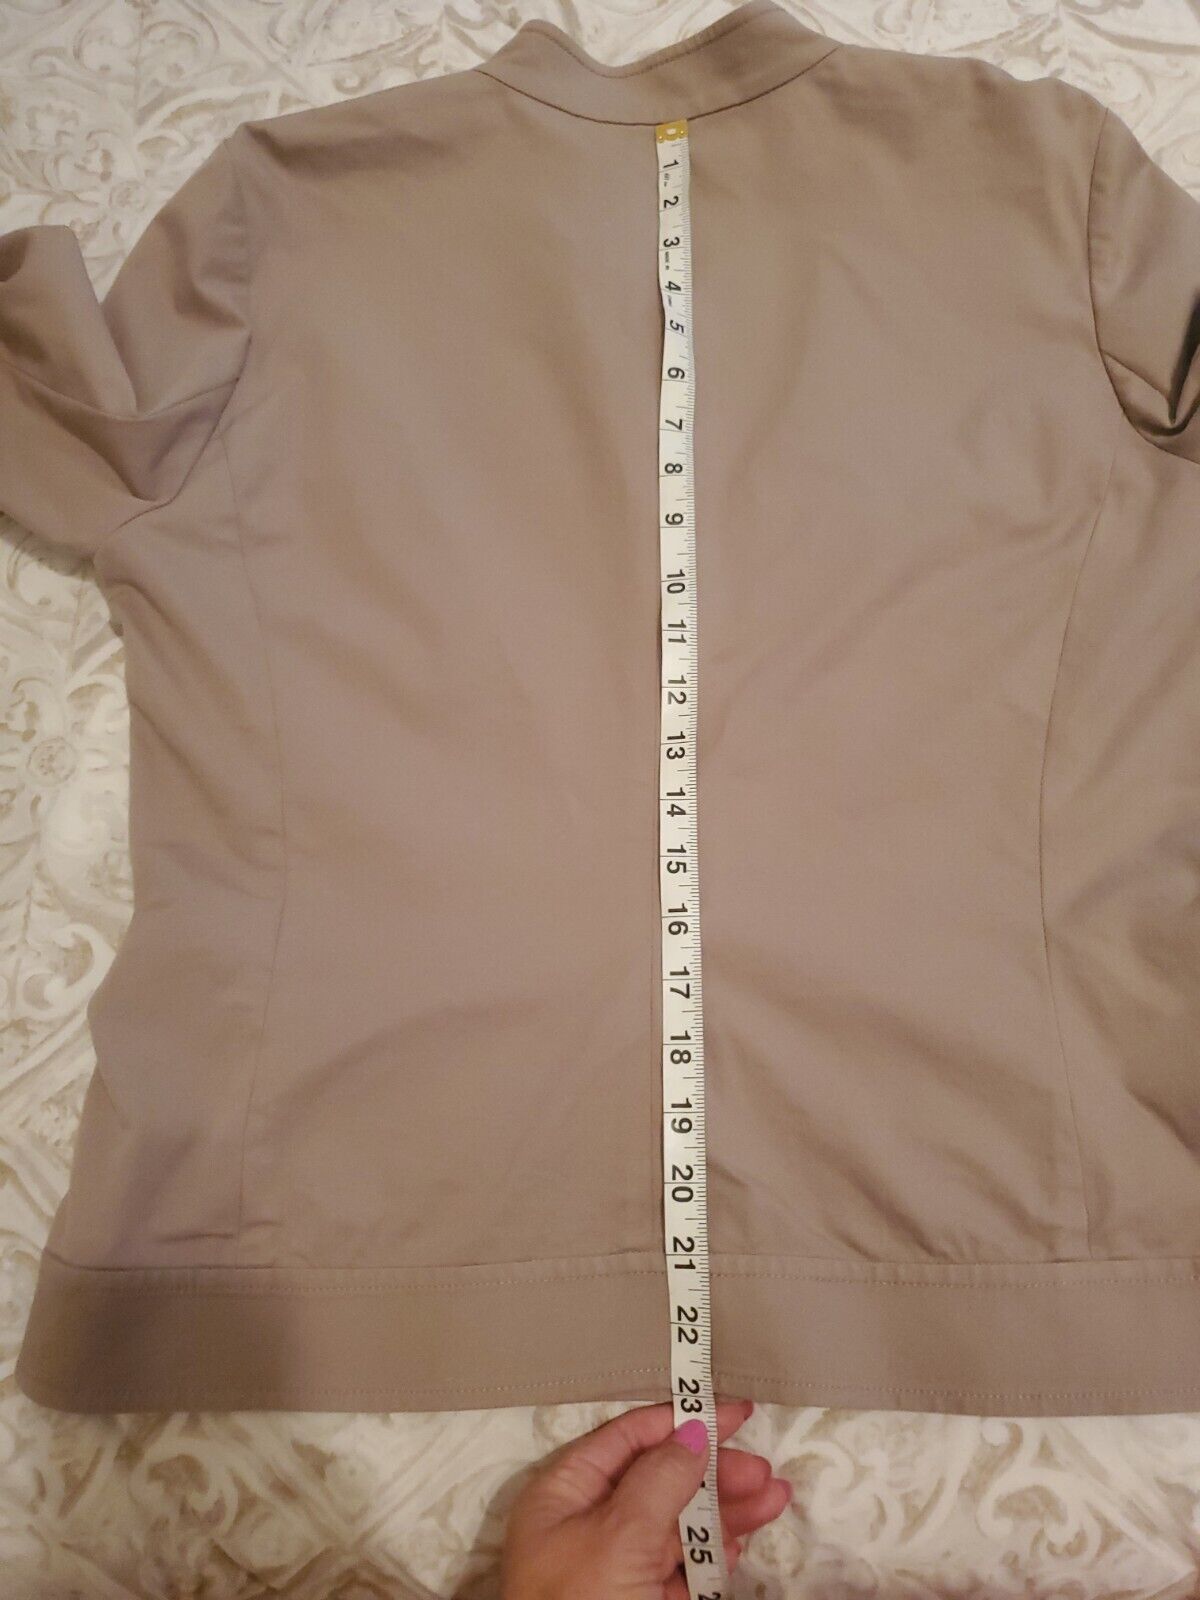 Doncaster Beige Jacket Size 10 - image 14